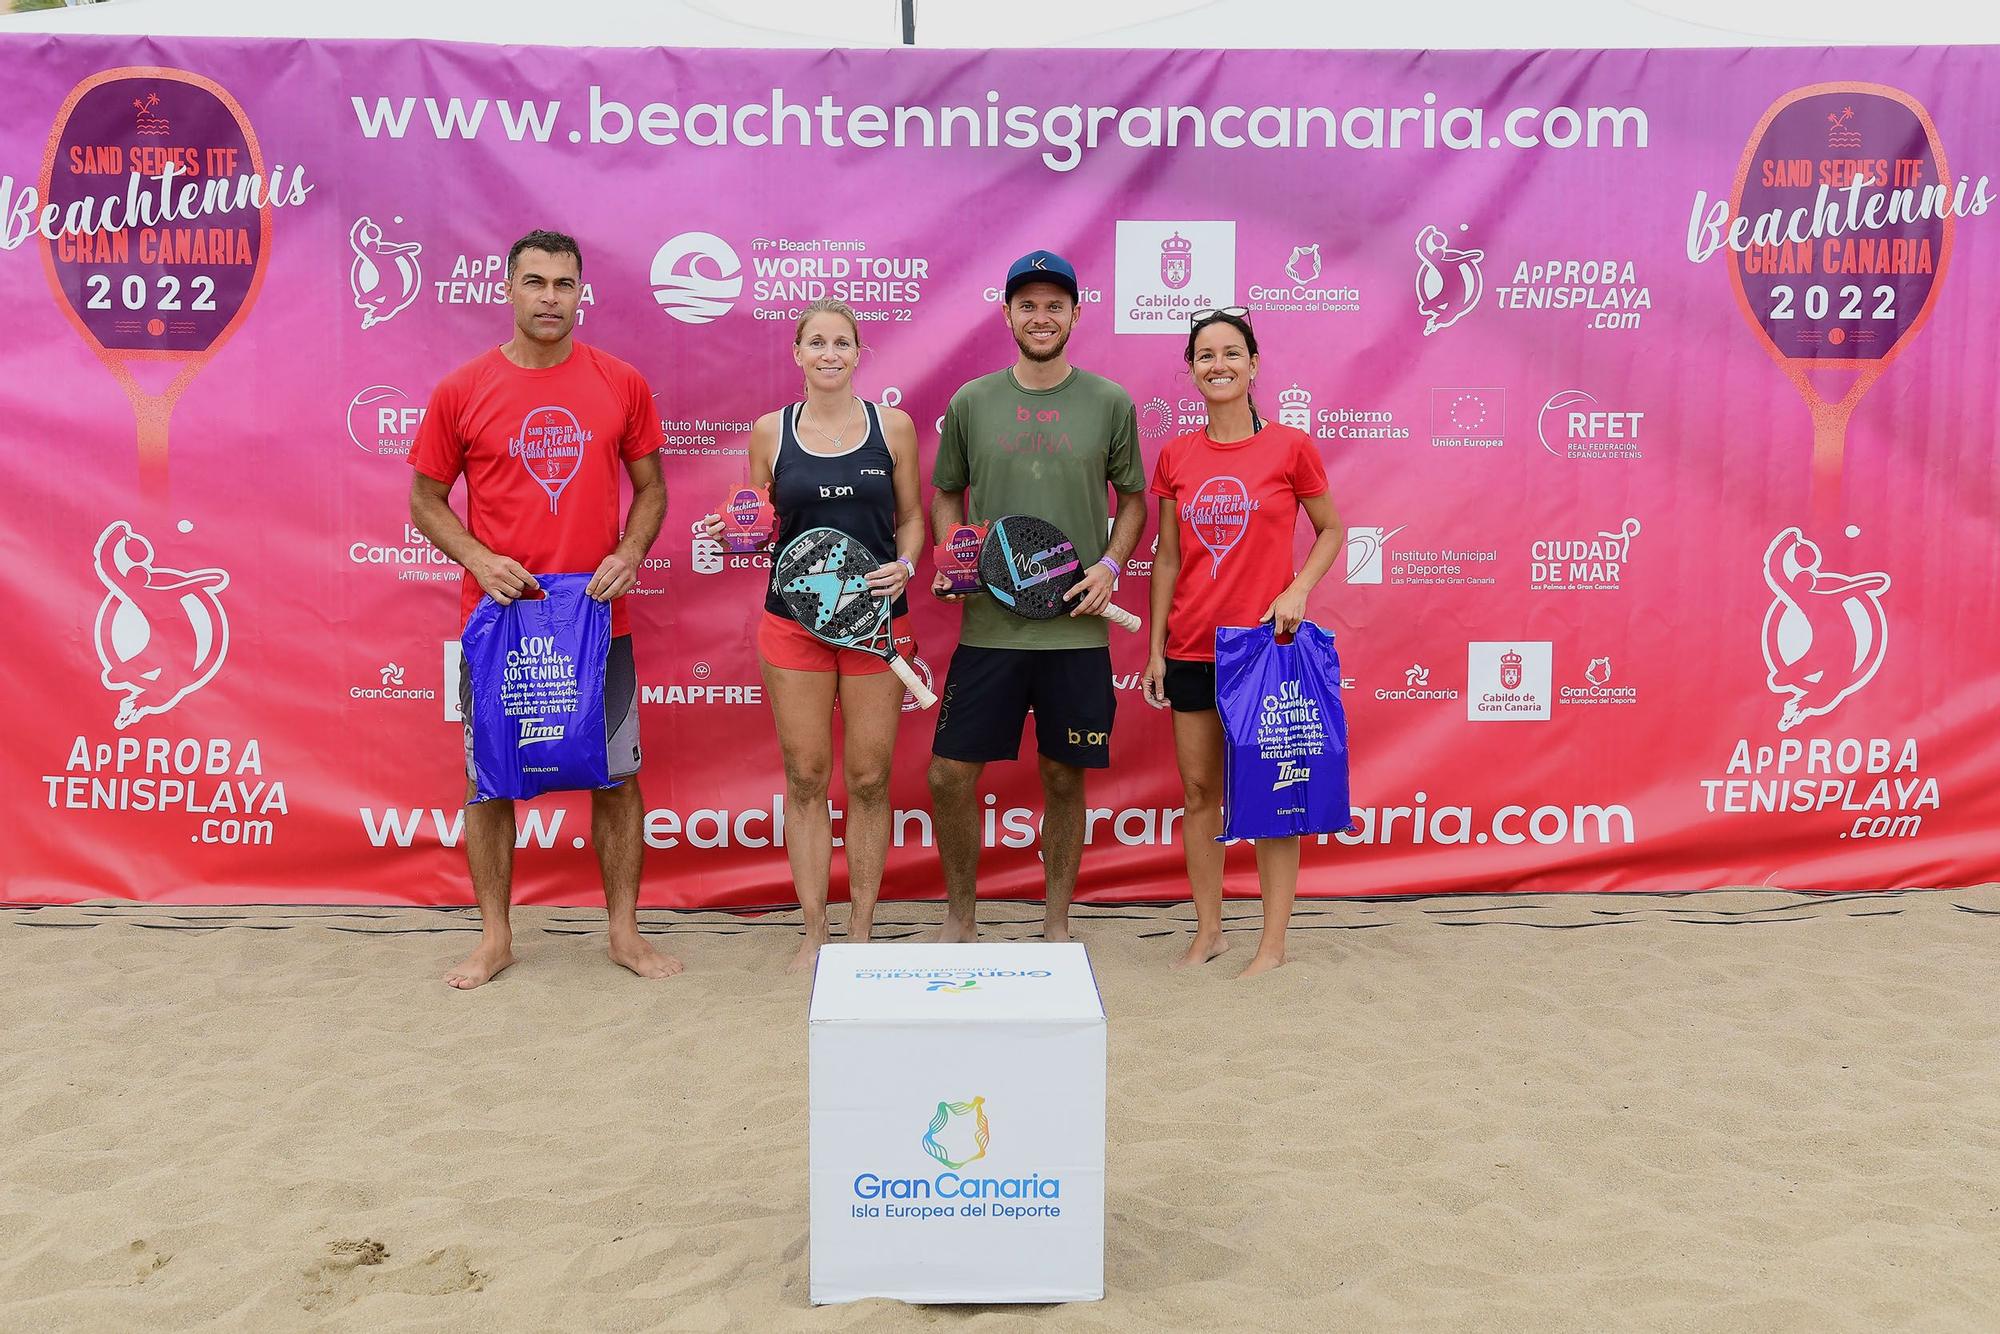 Biglmaier y Ringlstetter, campeones en categoría mixta del Sand Series ITF Beach Tennis Gran Canaria Classic 2022